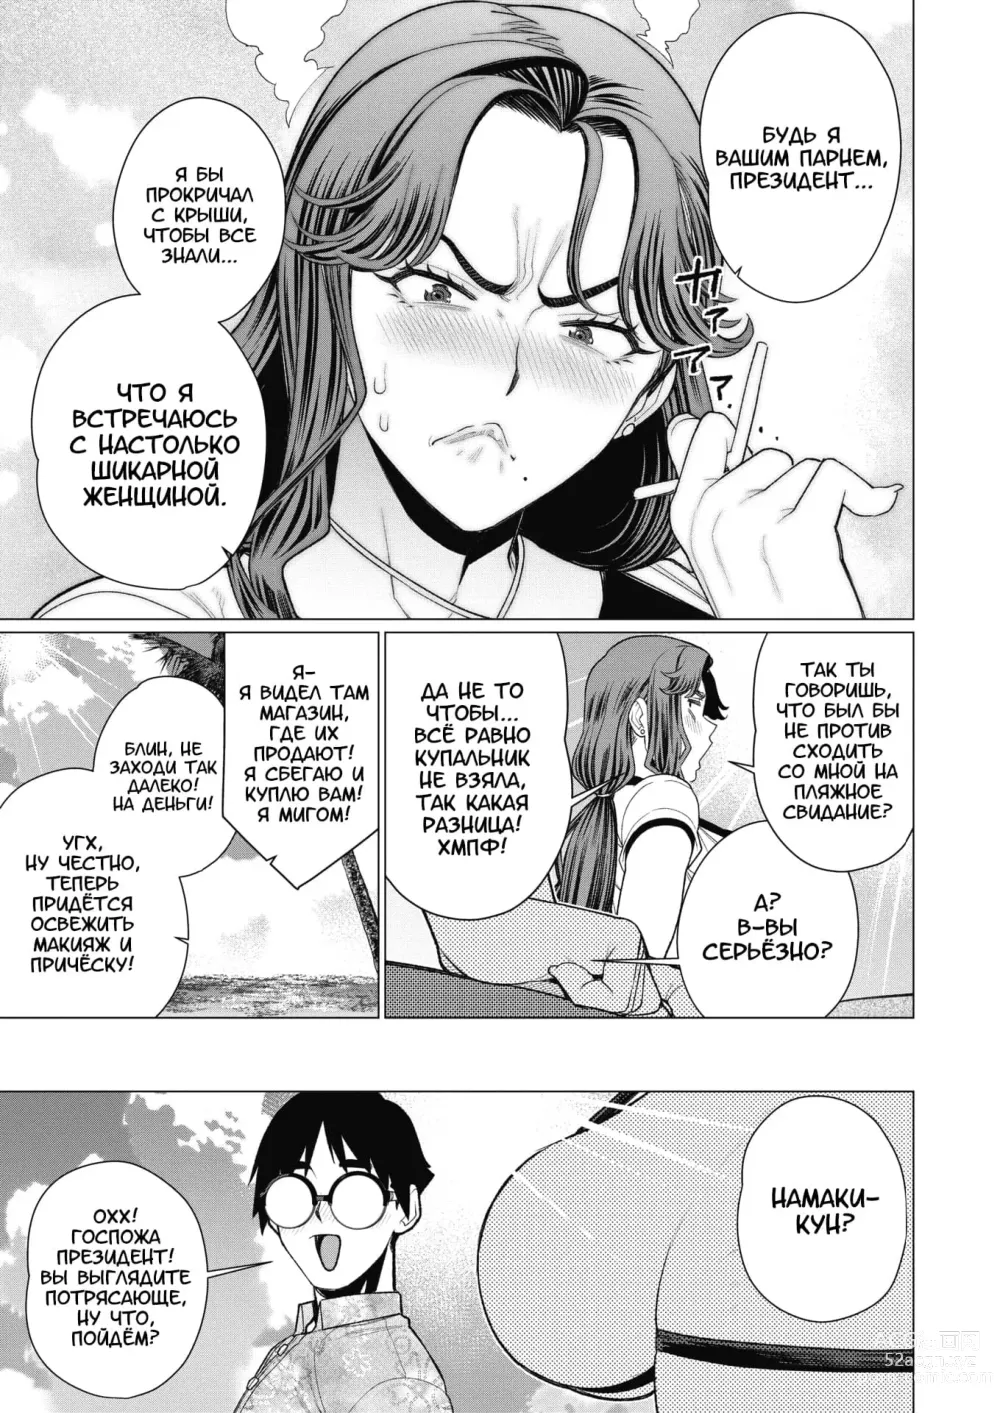 Page 5 of manga Госпожа Президент хочет, чтобы её заметили